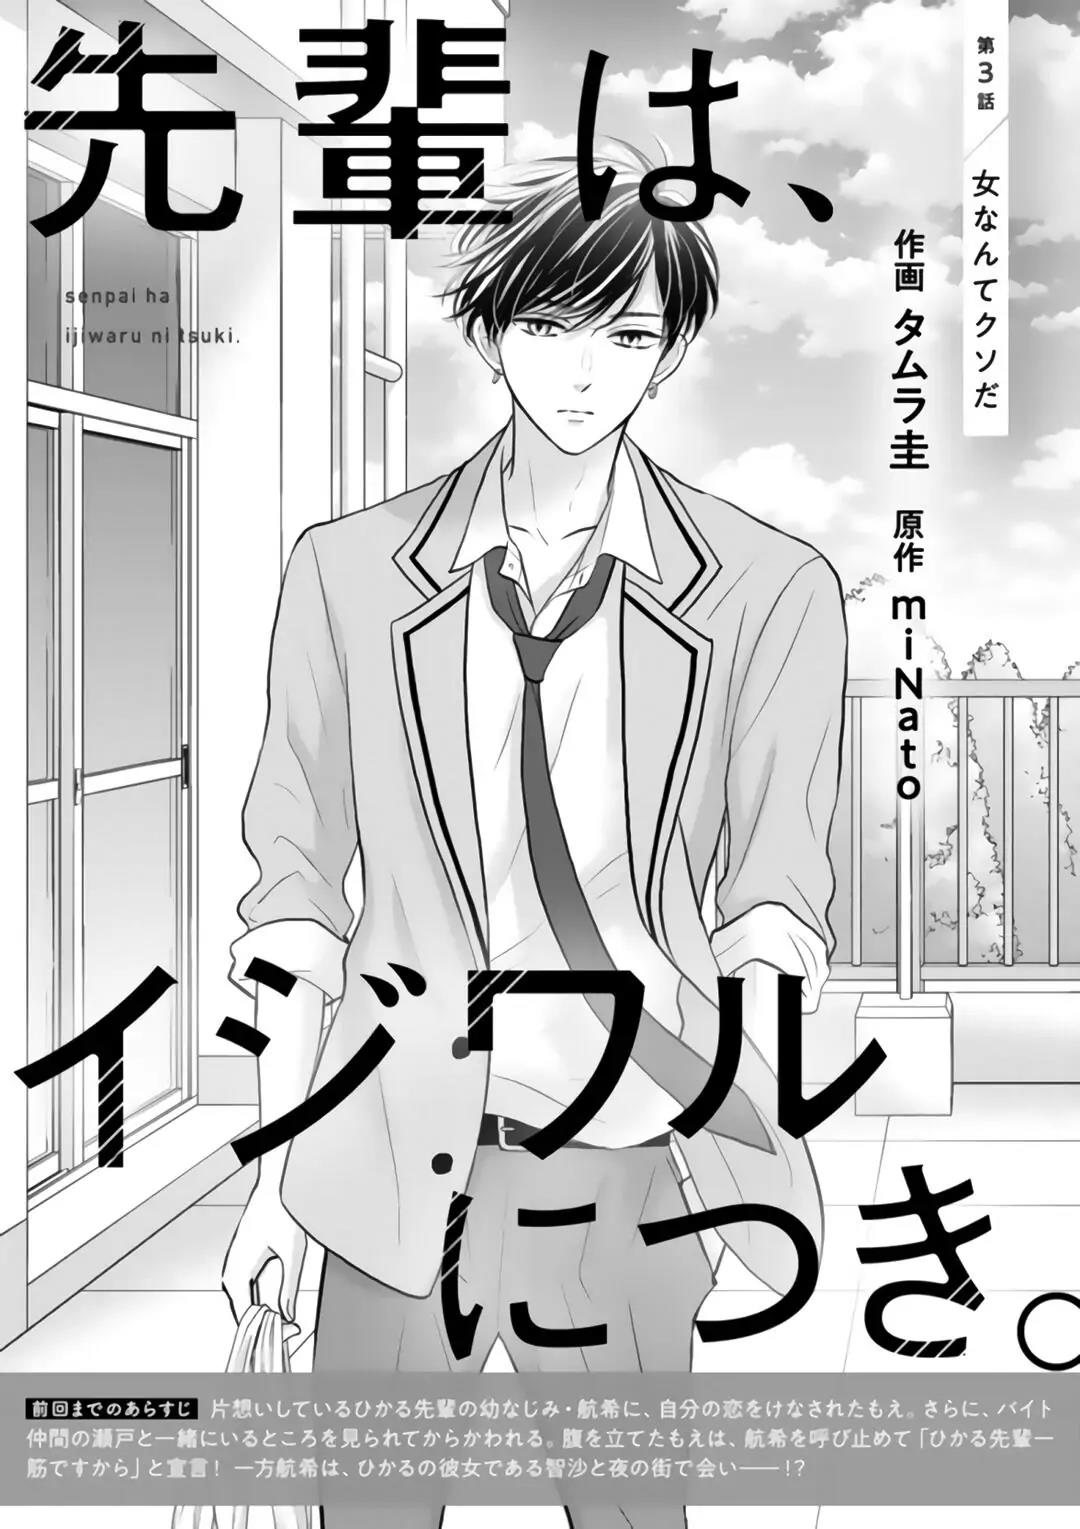 Baca Manga Senpai wa, Ijiwaru ni Tsuki Chapter 3 Gambar 2